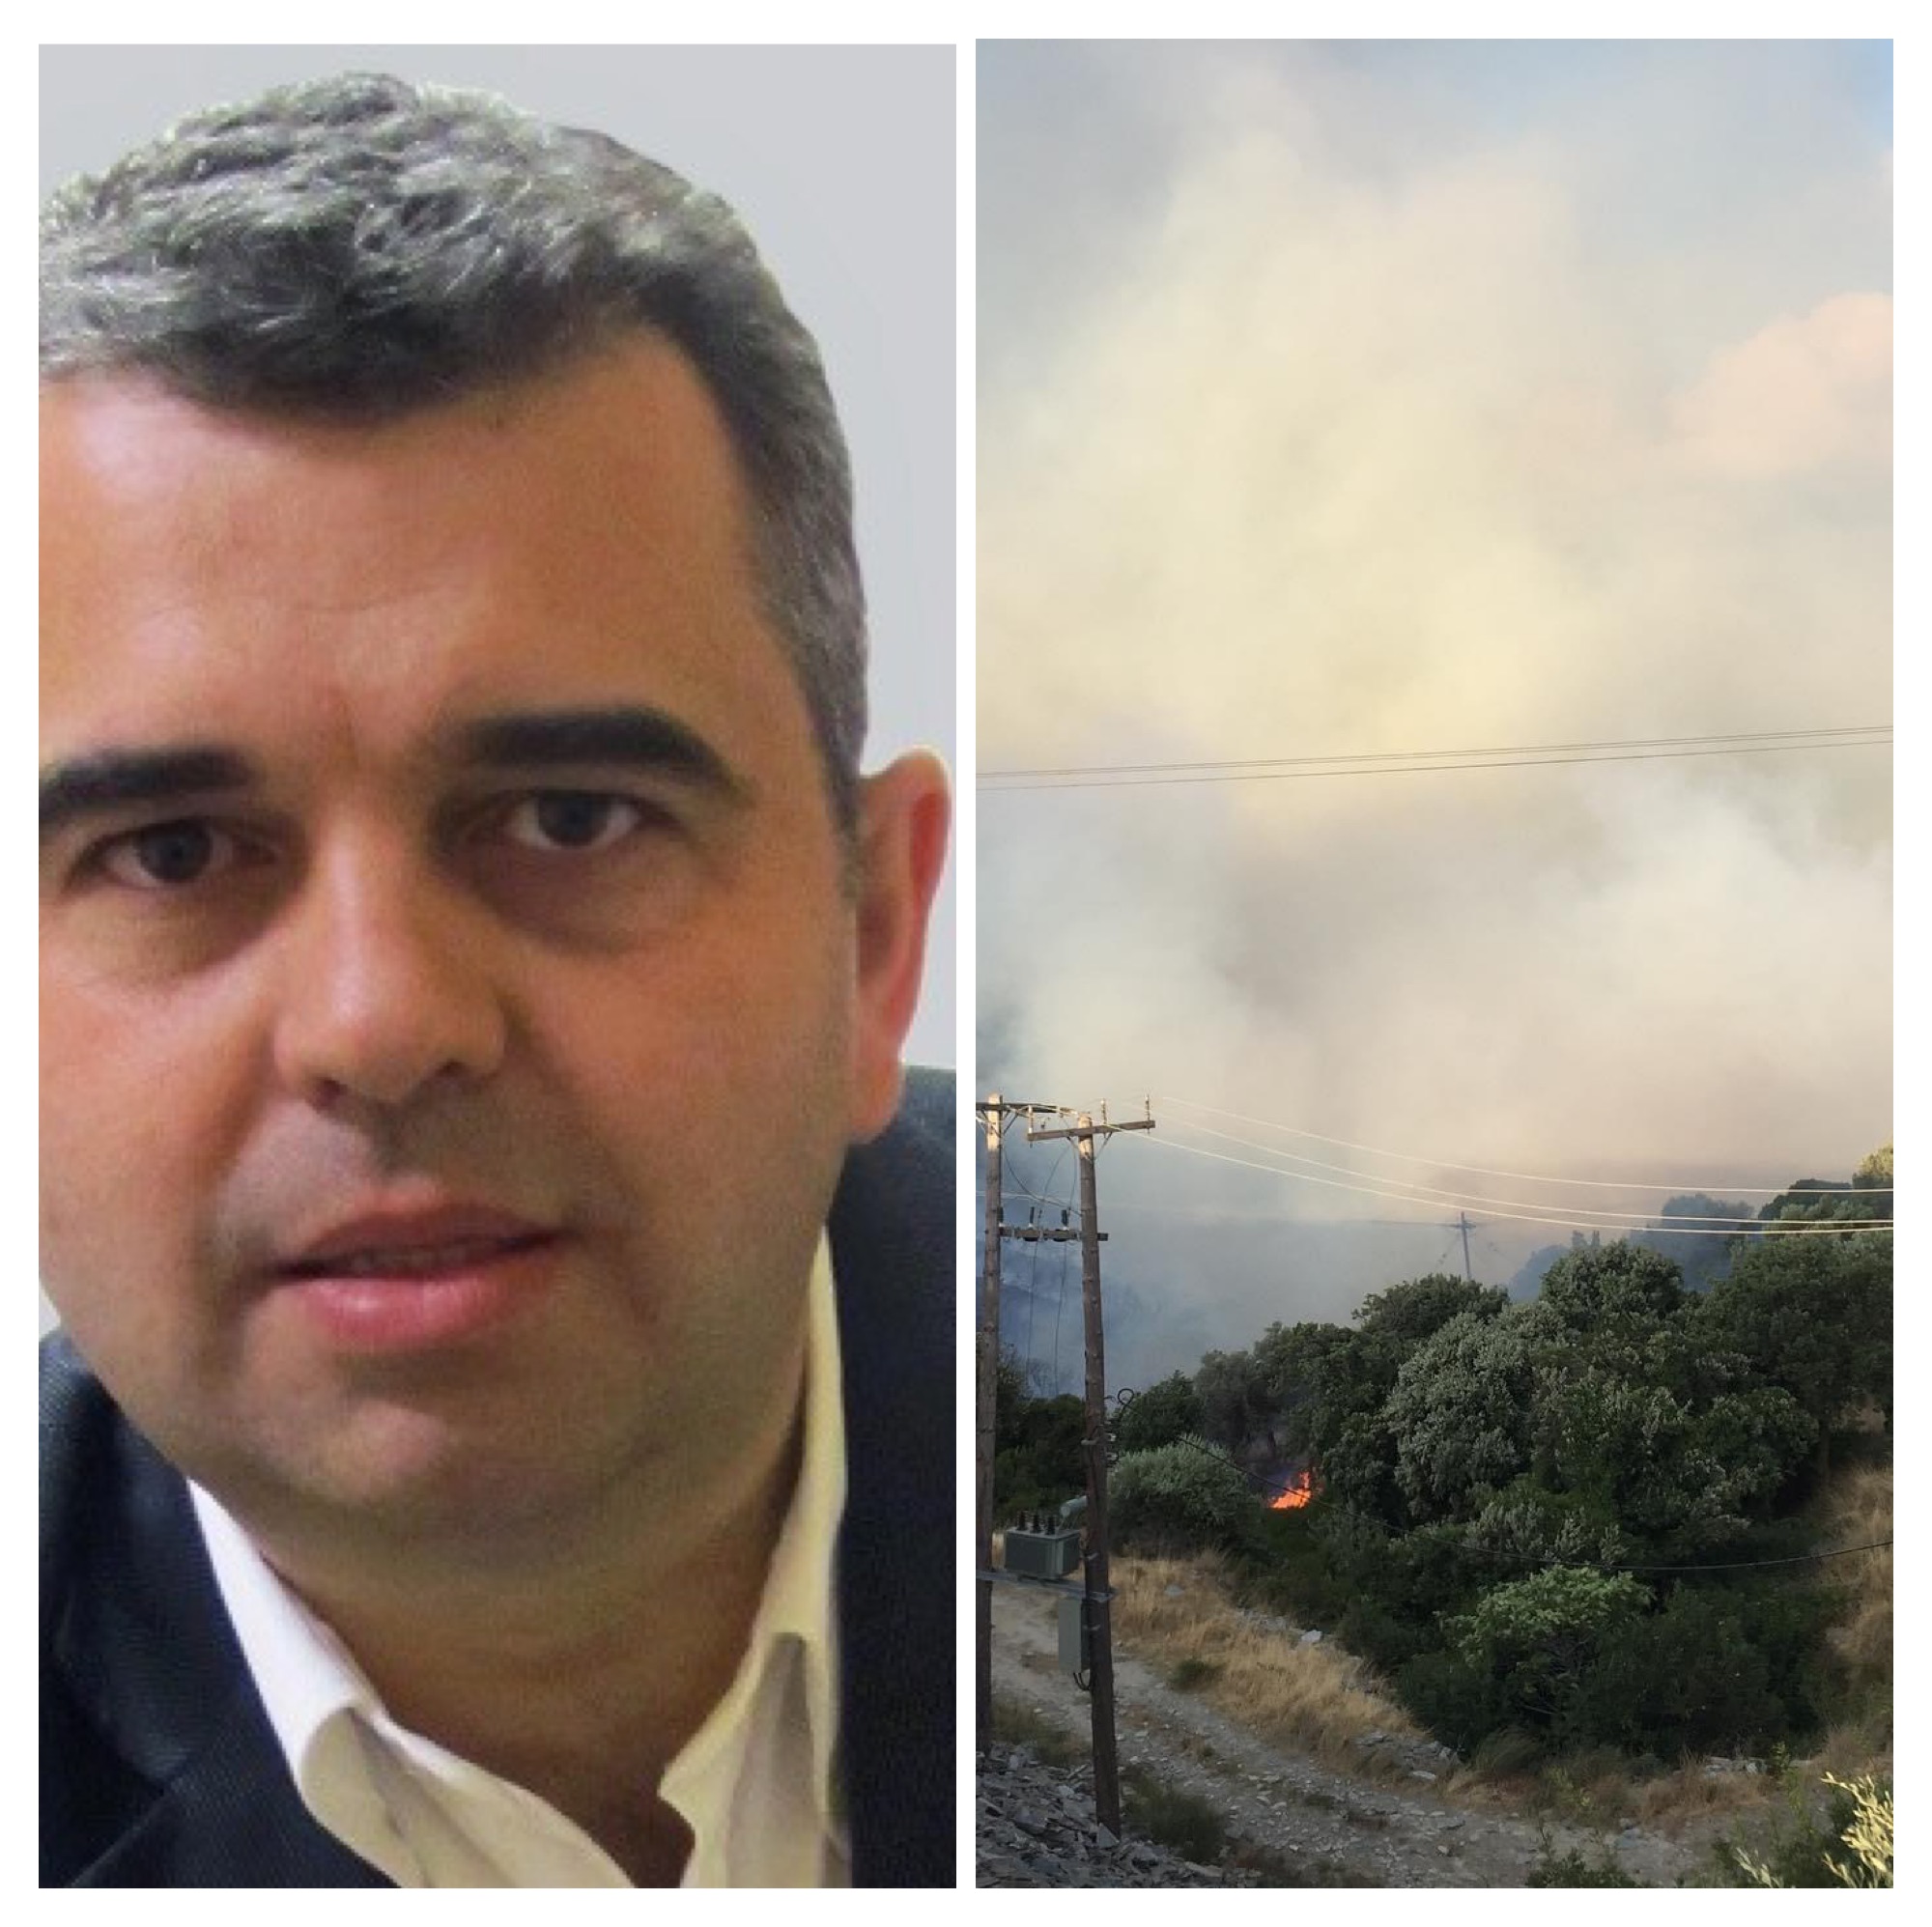 Φωτιά Κάρυστος – Ραβιόλος στο evima.gr: Οριοθετήθηκε η πυρκαγιά – Ανησυχία για αναζωπυρώσεις, πνέουν ισχυροί άνεμοι